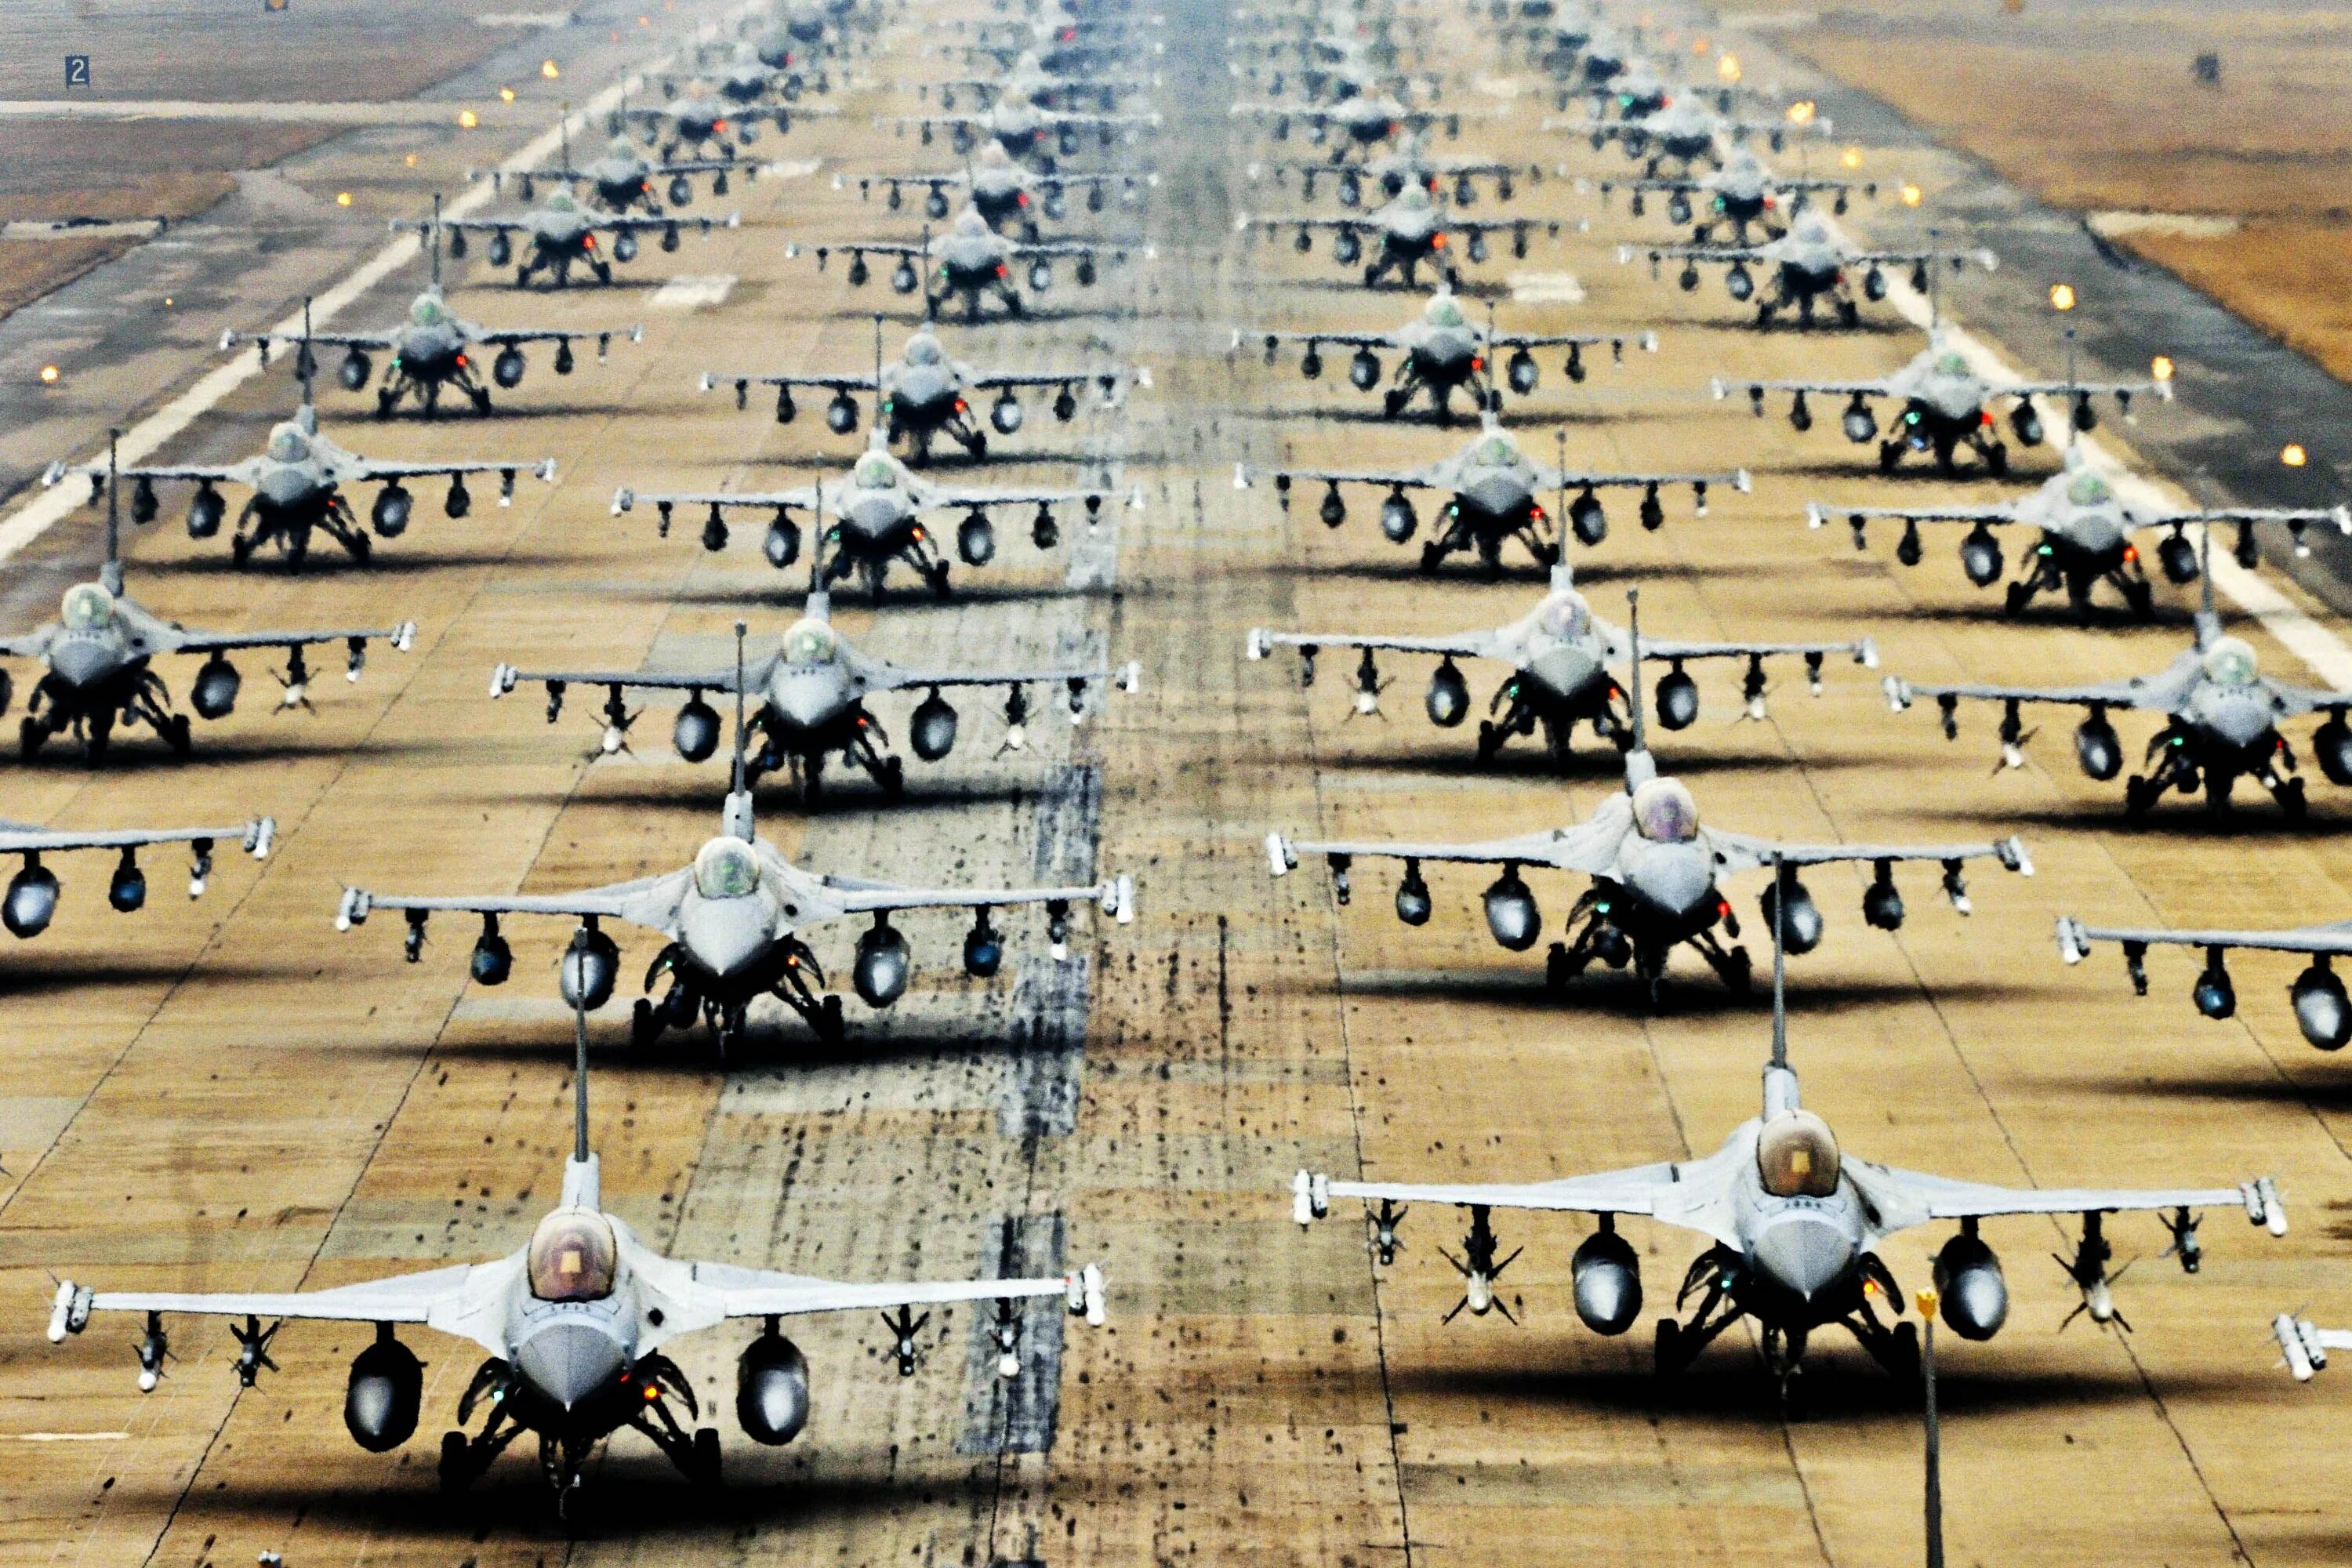 Огромное количество 6. Самолеты НАТО f16. Много военных самолетов. Военные самолеты США на авиабазе. Военный самолет на взлетной полосе.